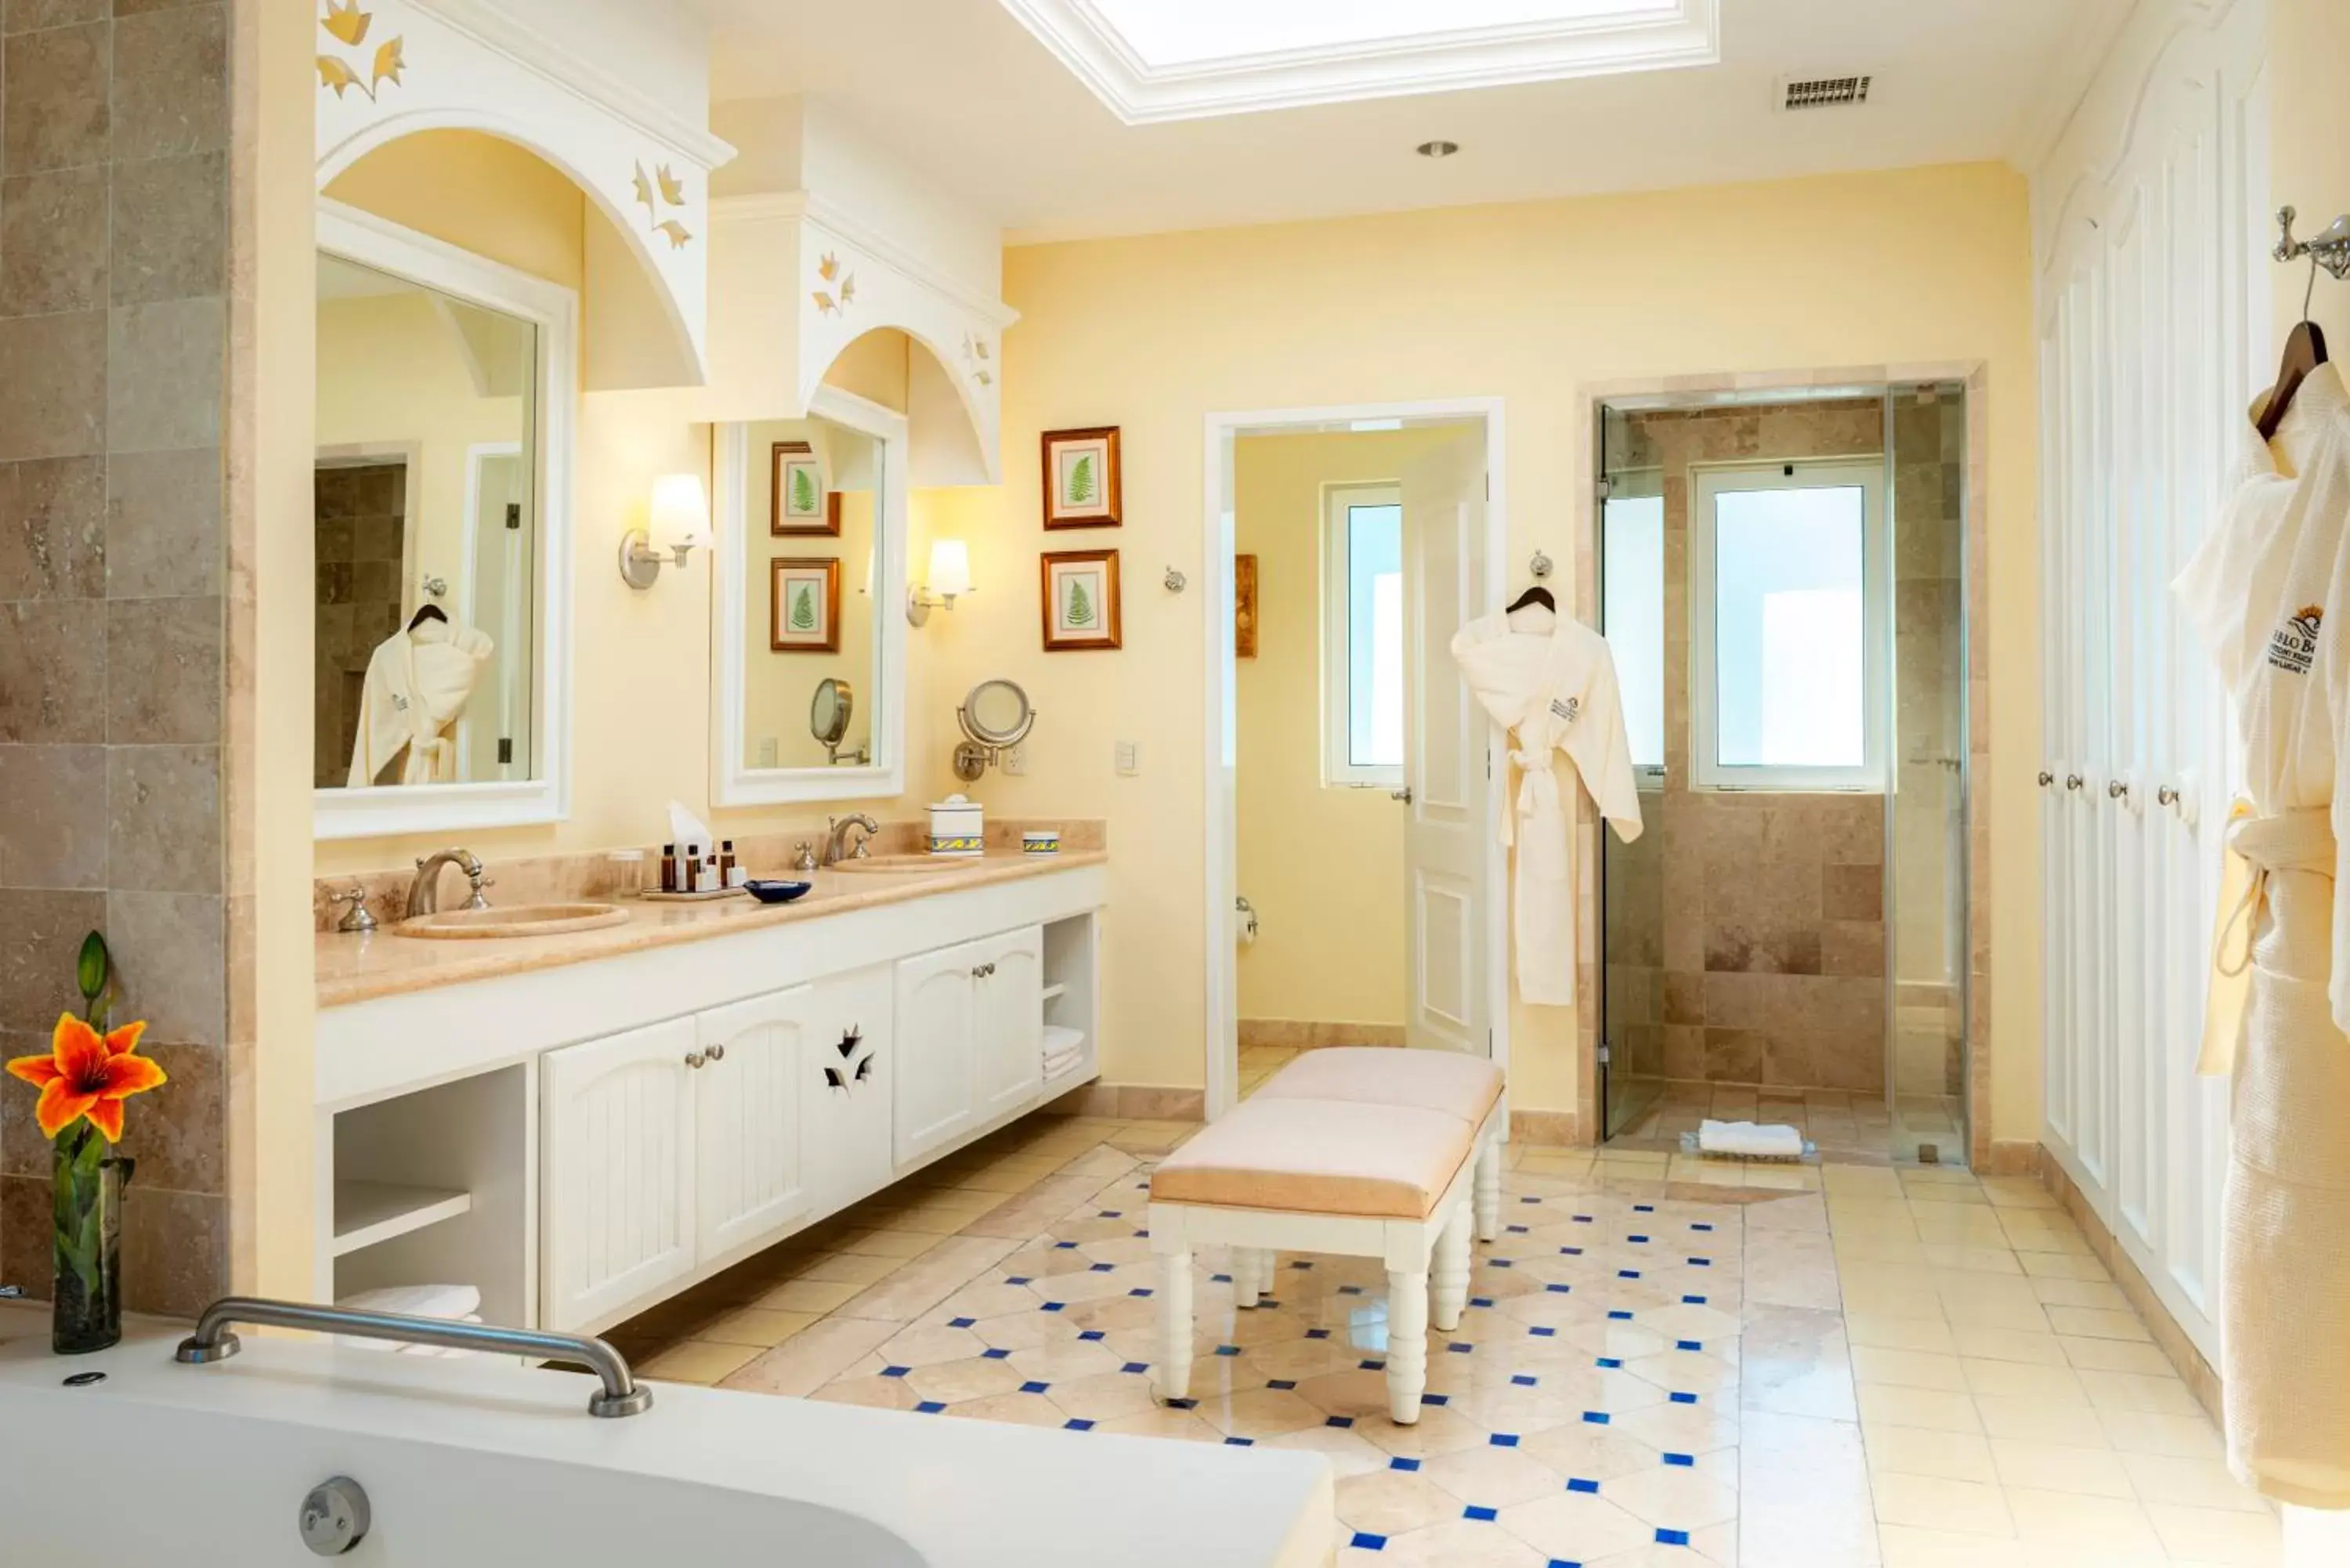 Bathroom in Pueblo Bonito Emerald Bay Resort & Spa - All Inclusive